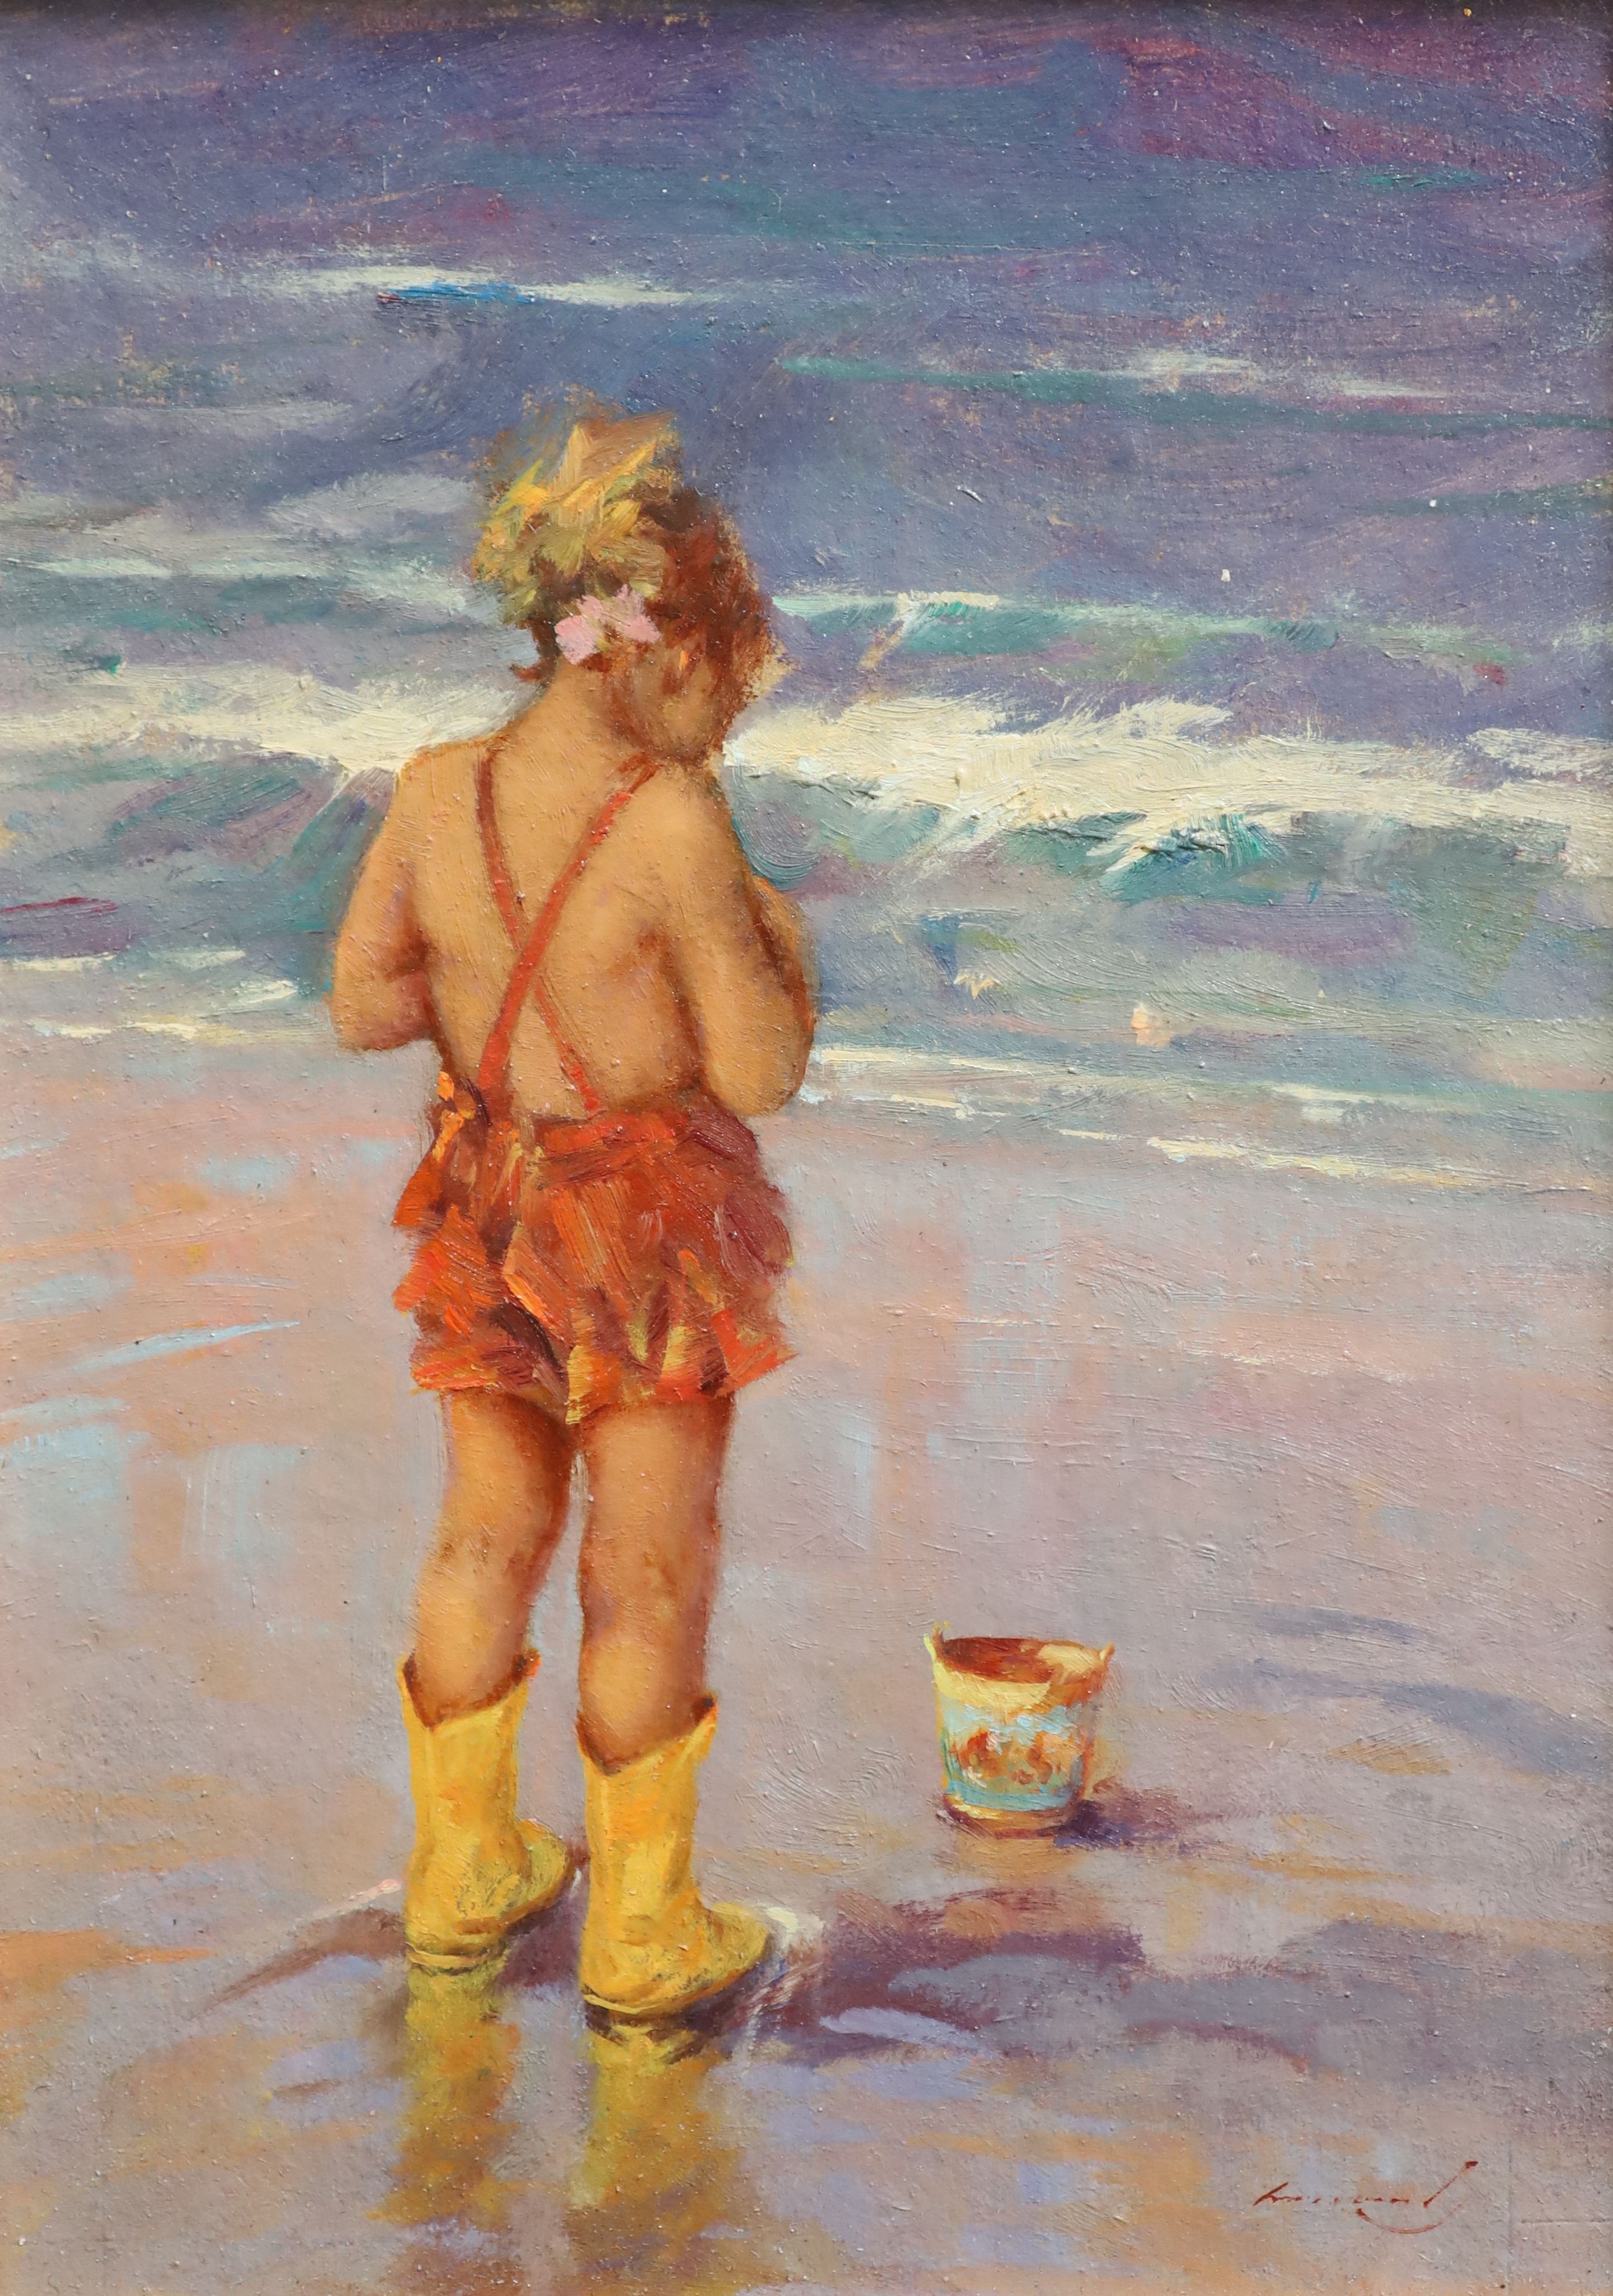 Ken Moroney (1949-2018), On the seashore, Oil on board, 24 x 17cm.